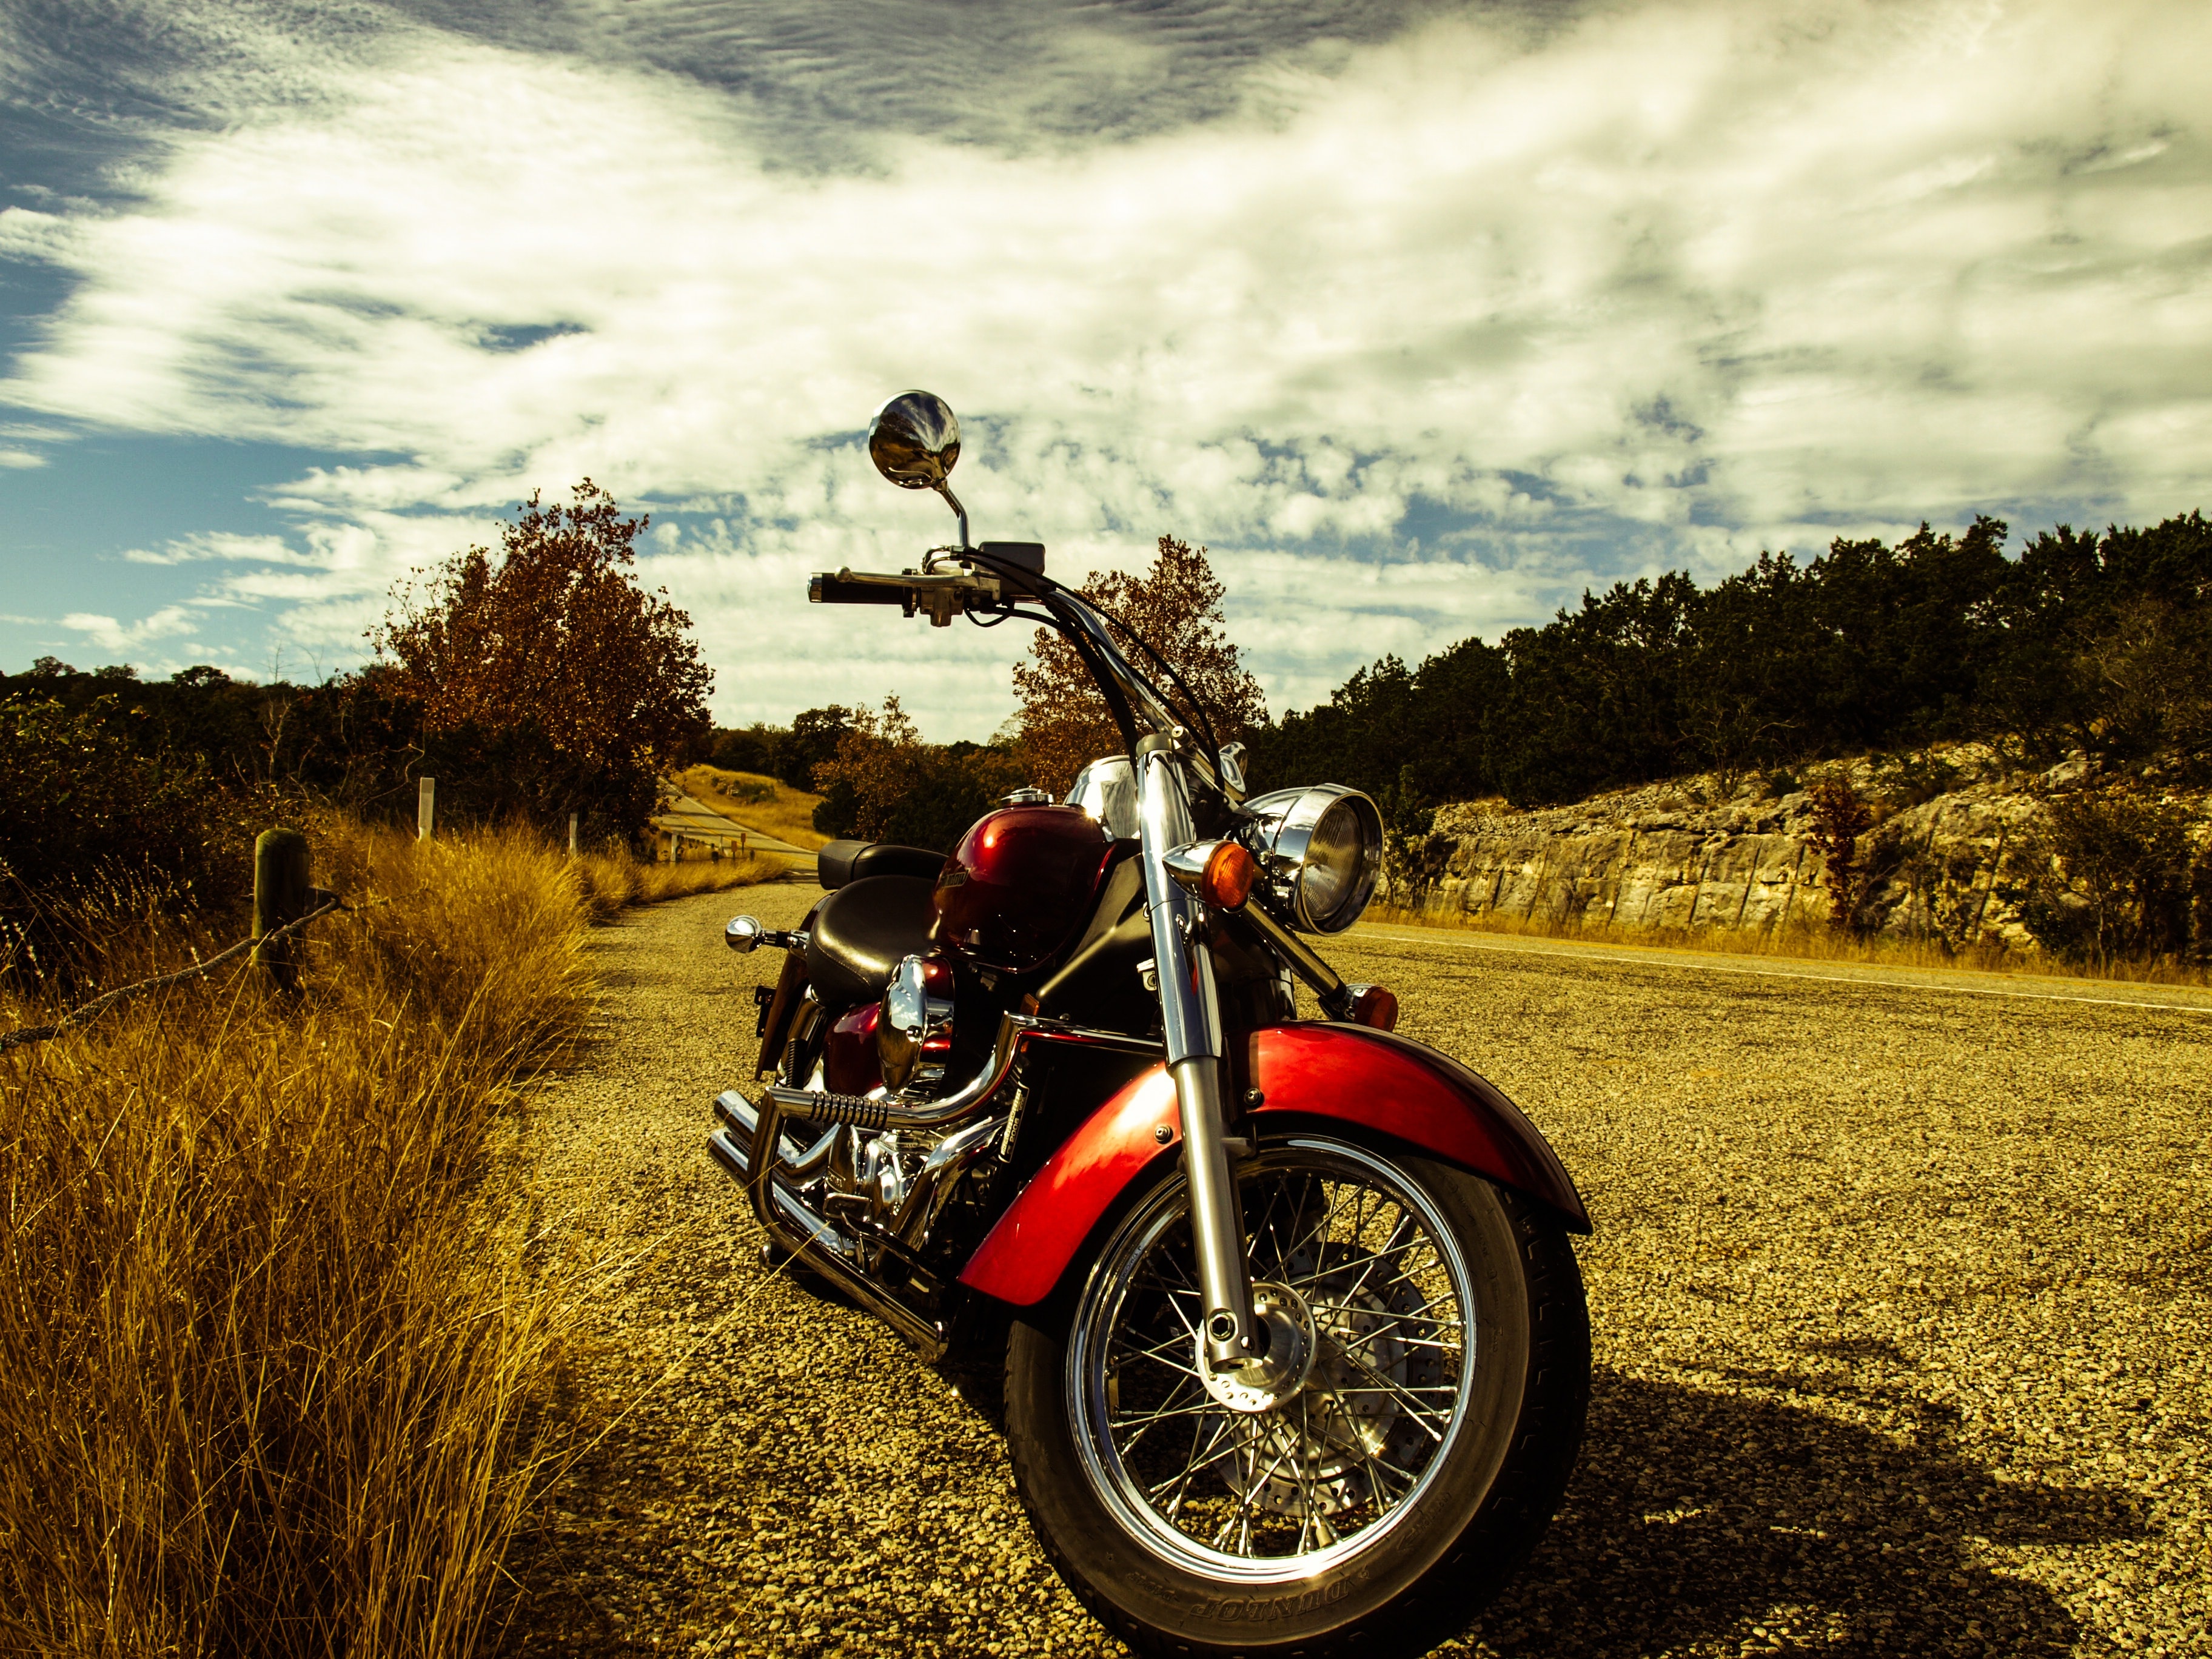 Motorcycle, Biker, Motorbike, Road, motorcycle, outdoors